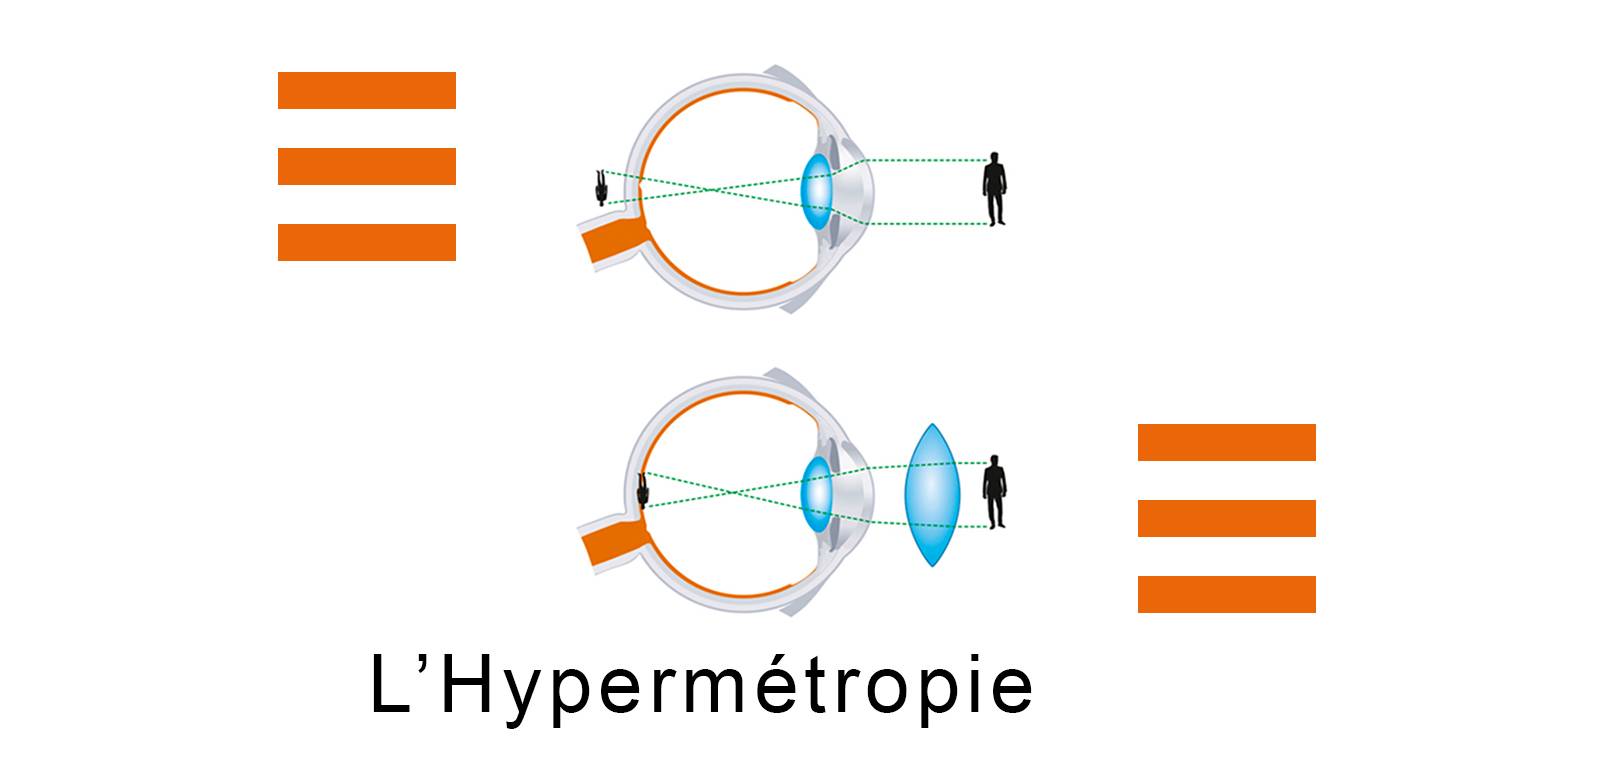 L'hypermétropie